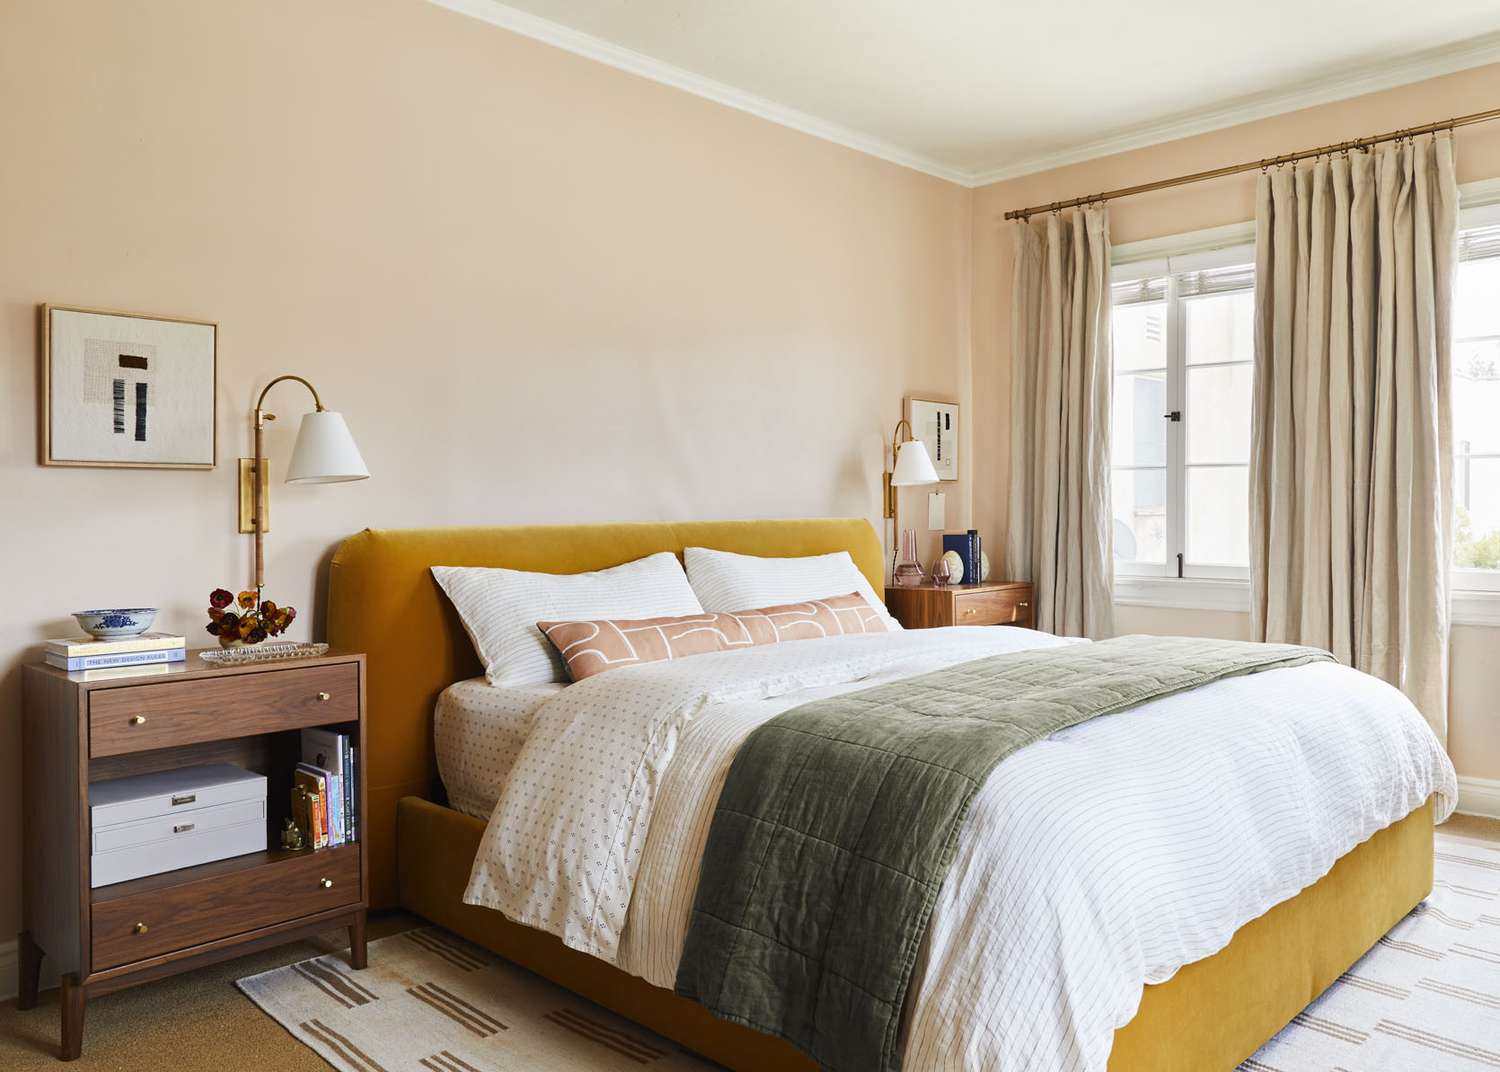 Una cama de color amarillo mostaza se apoya contra una pared de suave color melocotón